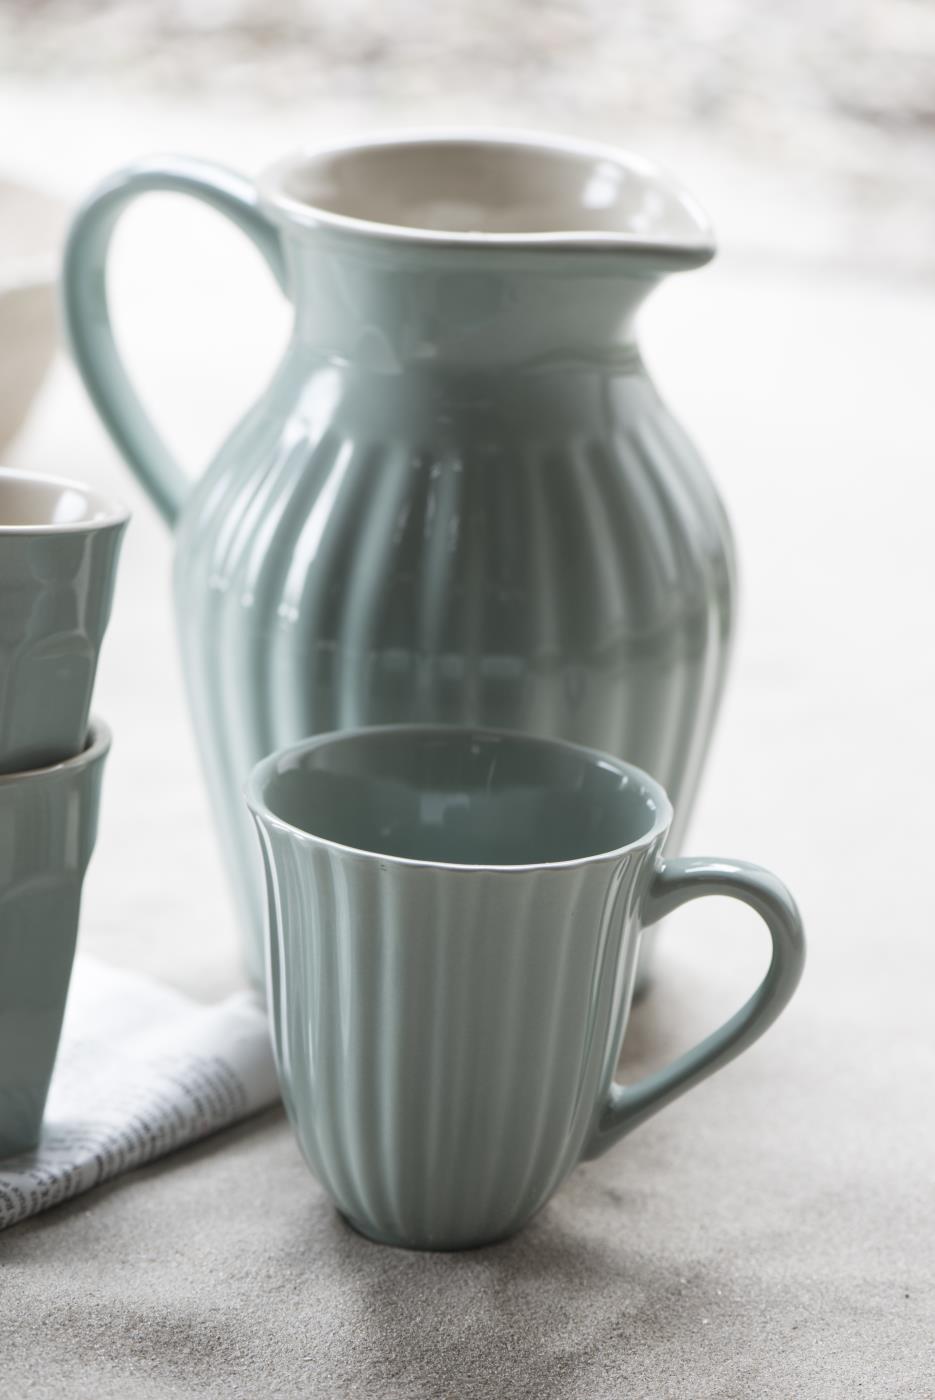 rustic-sage-green mug and pitcher